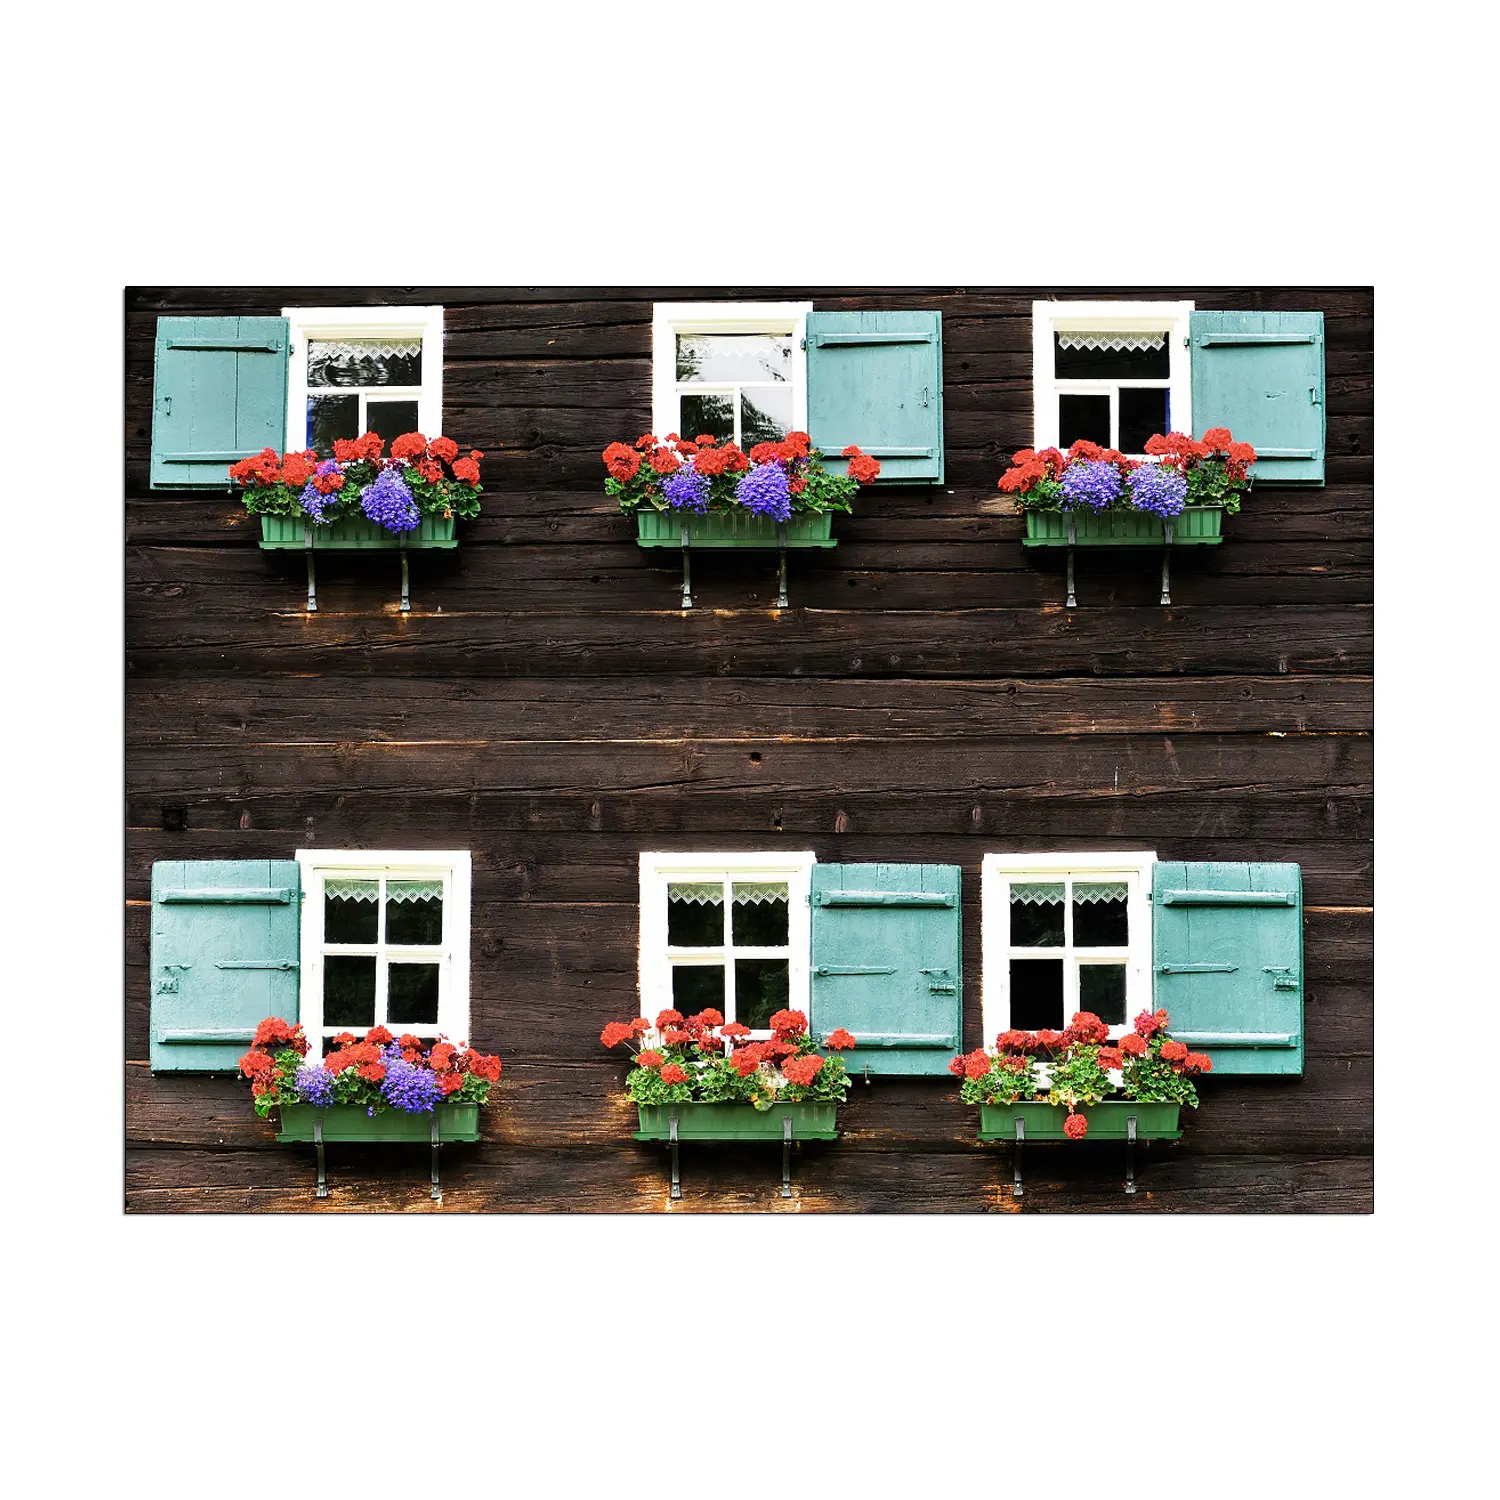 Sechs Cyan und weiße Fenster mit kleinen Blumen balkon auf Holzhaus Leinwand gedruckt Malerei Wohnkultur Wand kunst Bild